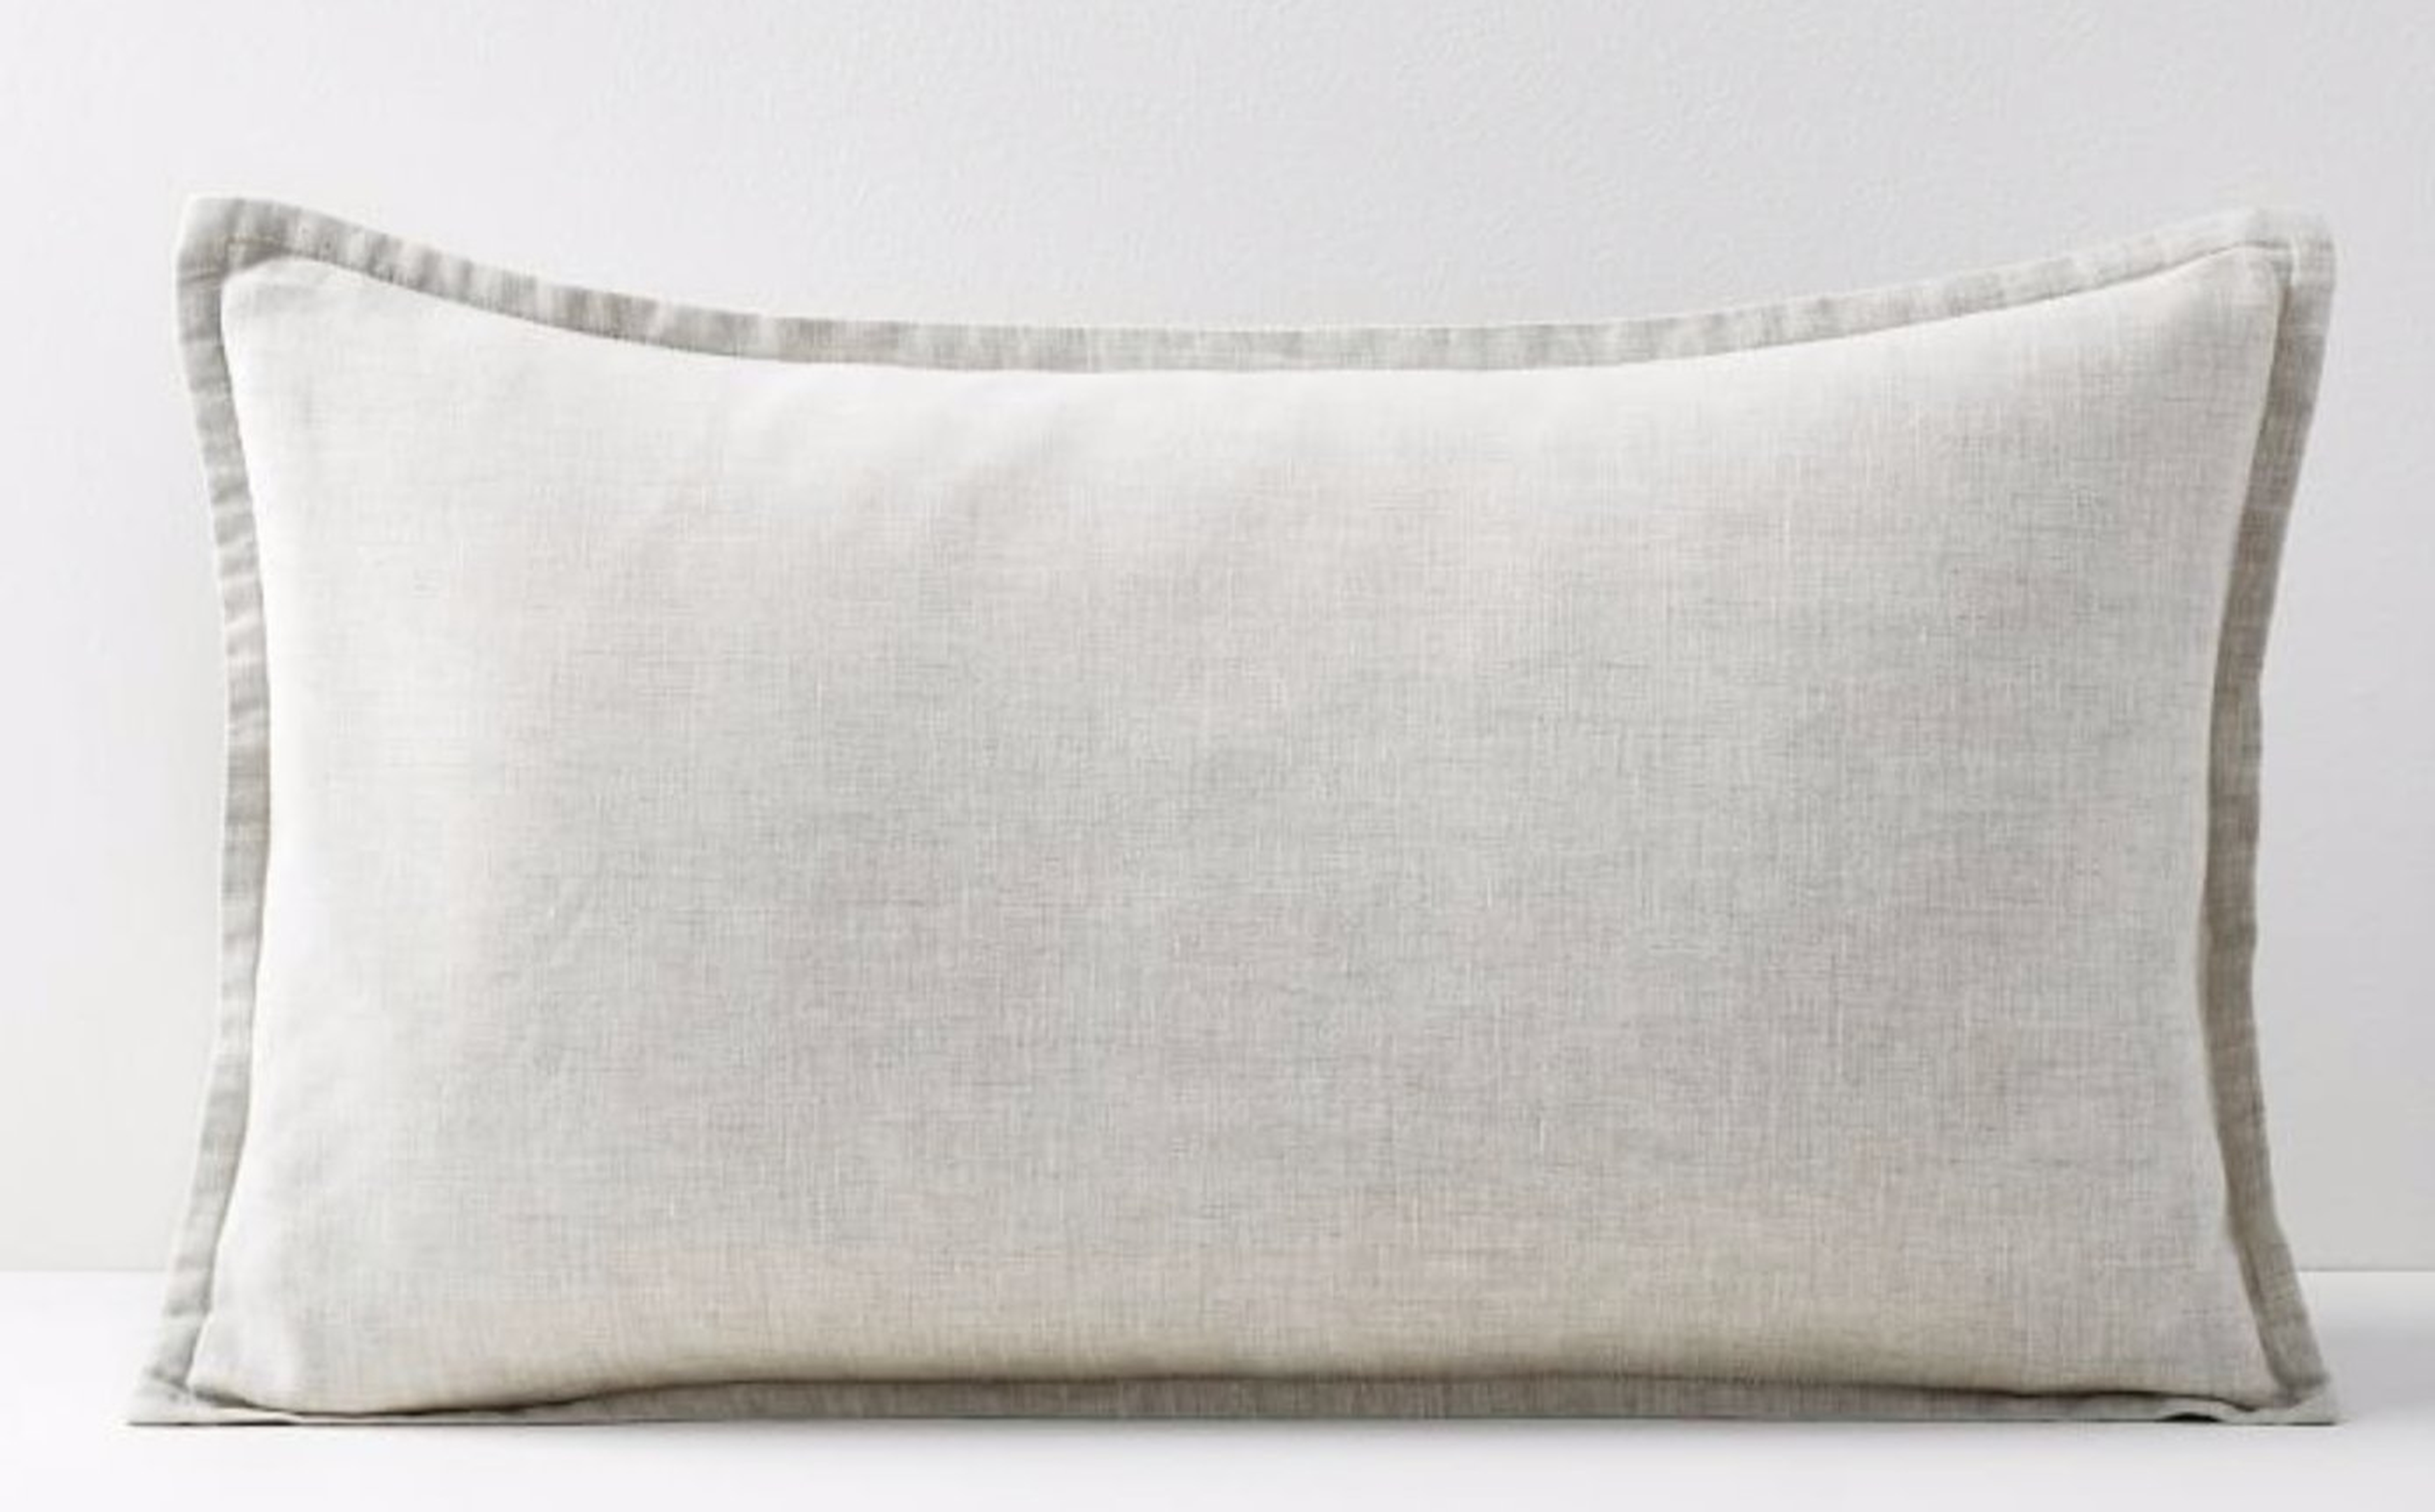 Belgian Flax Linen Lumbar Pillow Cover, Natural Flax, Fiber Dye, 12"x21" - West Elm